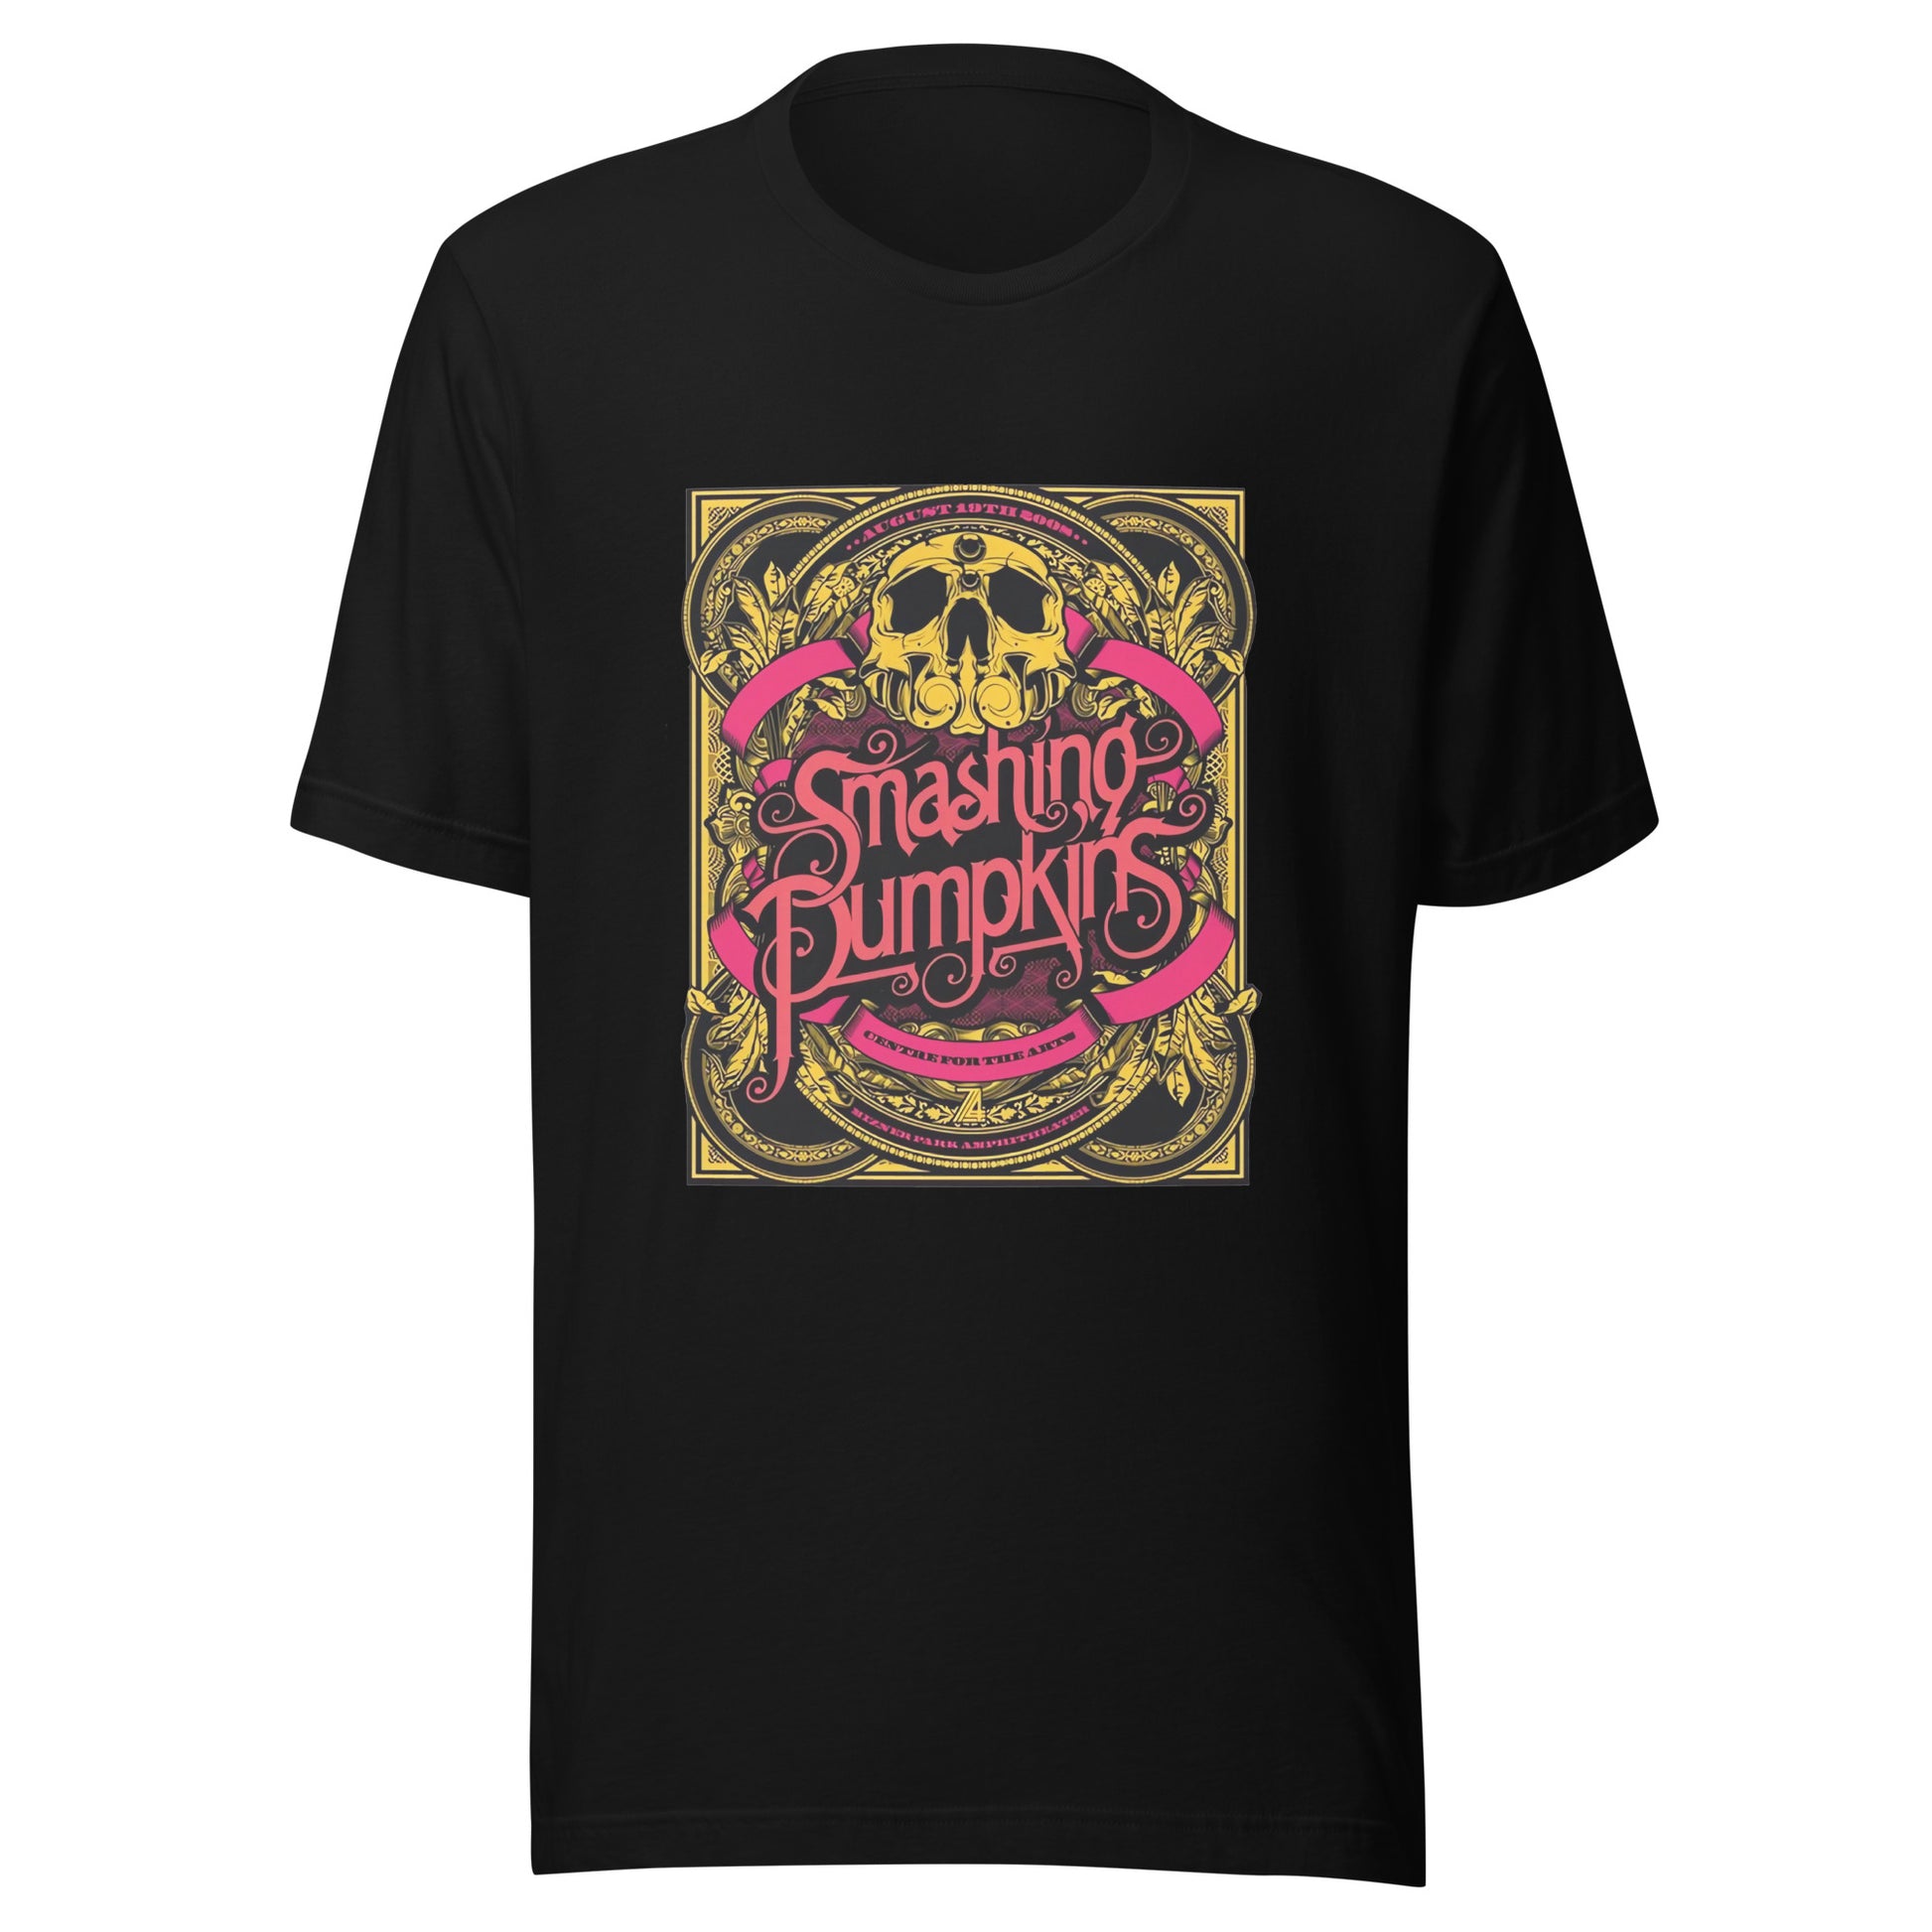 ¡Compra el mejor merchandising en Superstar! Encuentra diseños únicos y de alta calidad en playeras, Camiseta The Smashing Pumpkins Banda